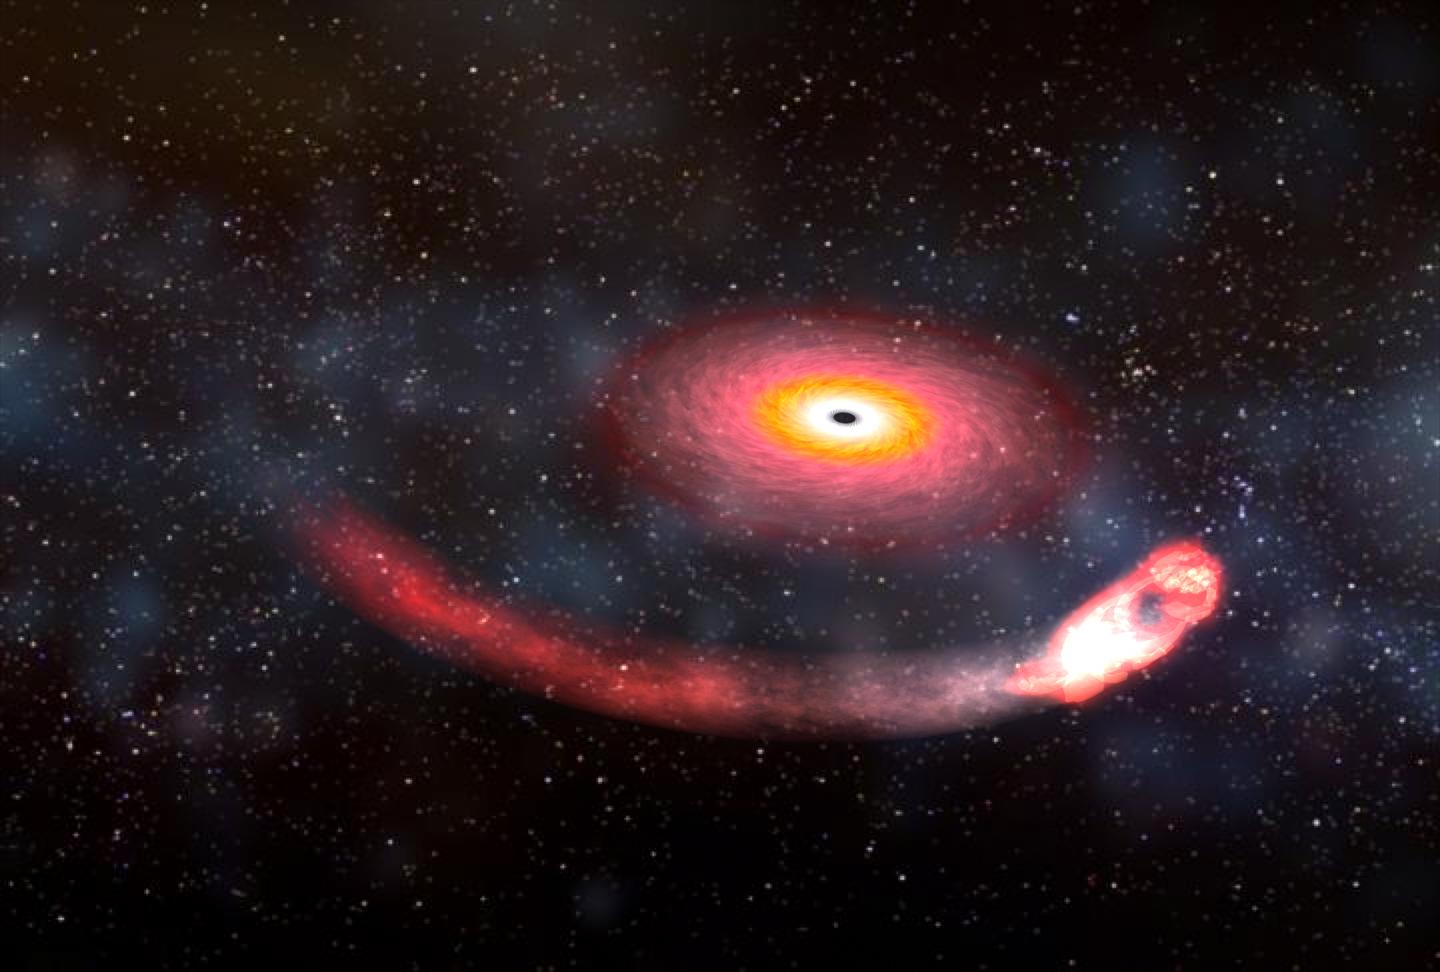 How a Neutron Star Might Orbit a Black Hole